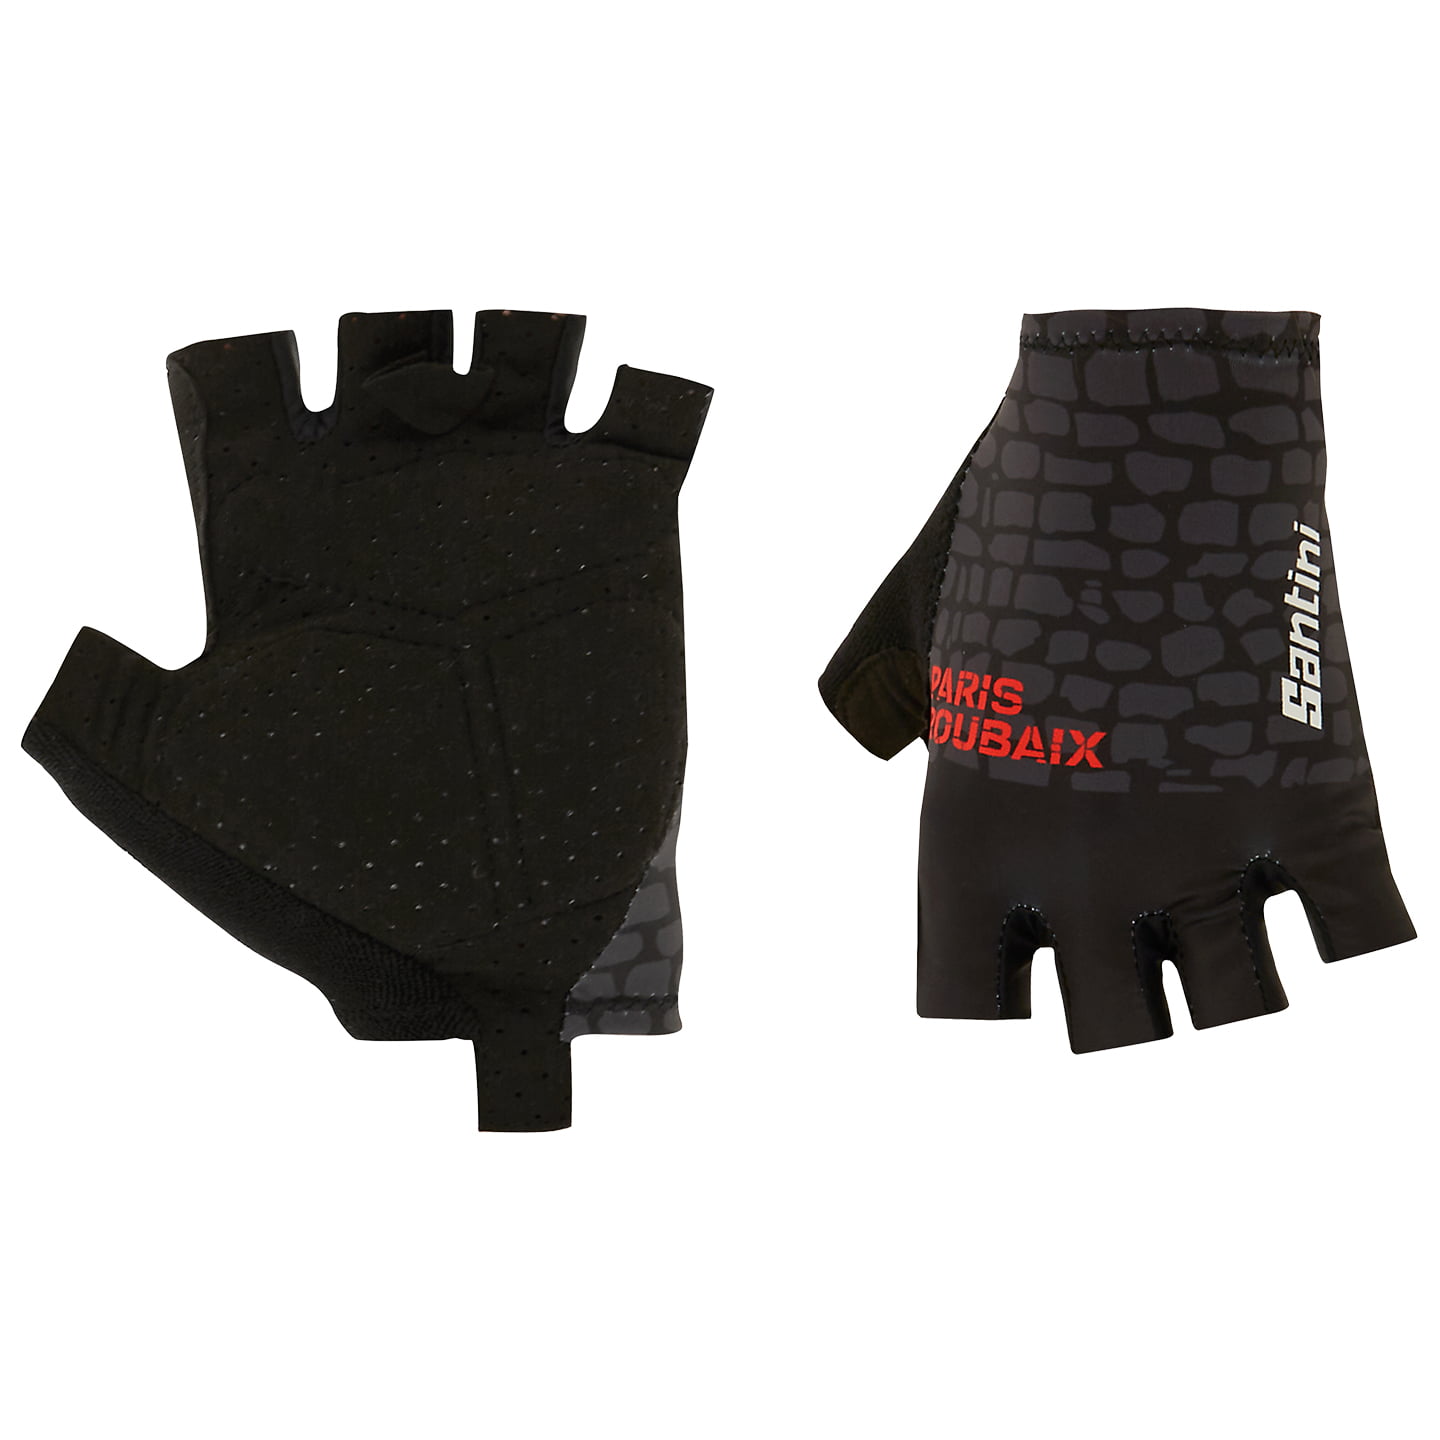 SANTINI Paris-Roubaix 2023 Cycling Gloves, for men, size M, Cycling gloves, Cycling gear